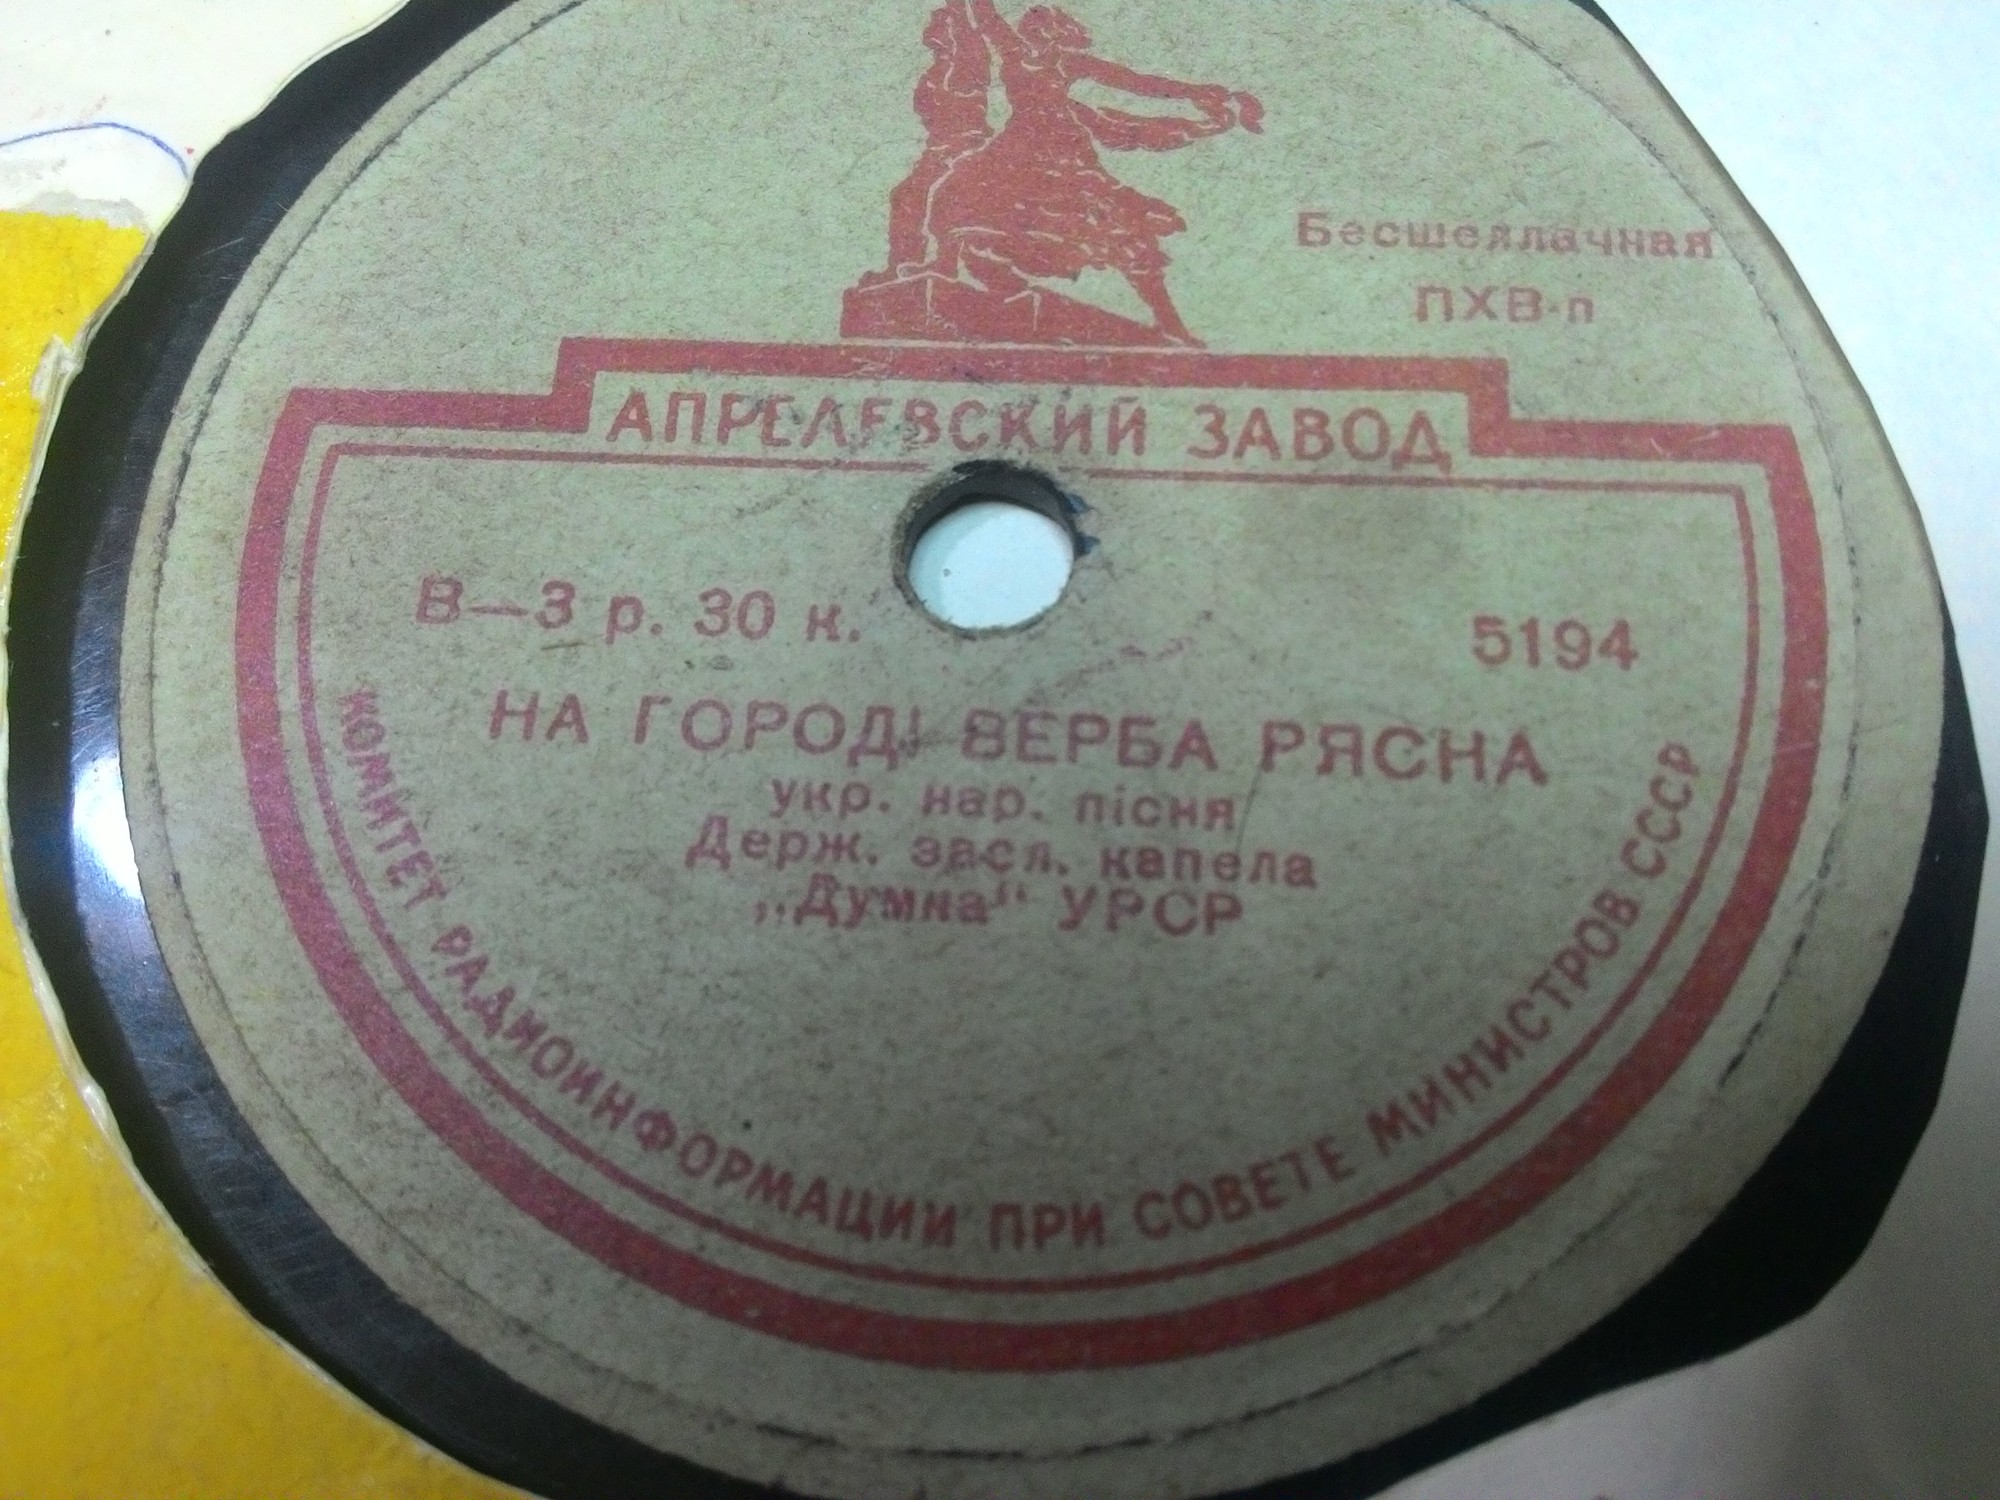 ГОСУДАРСТВЕННАЯ КАПЕЛЛА УССР «ДУМКА» «Украинские народные песни»